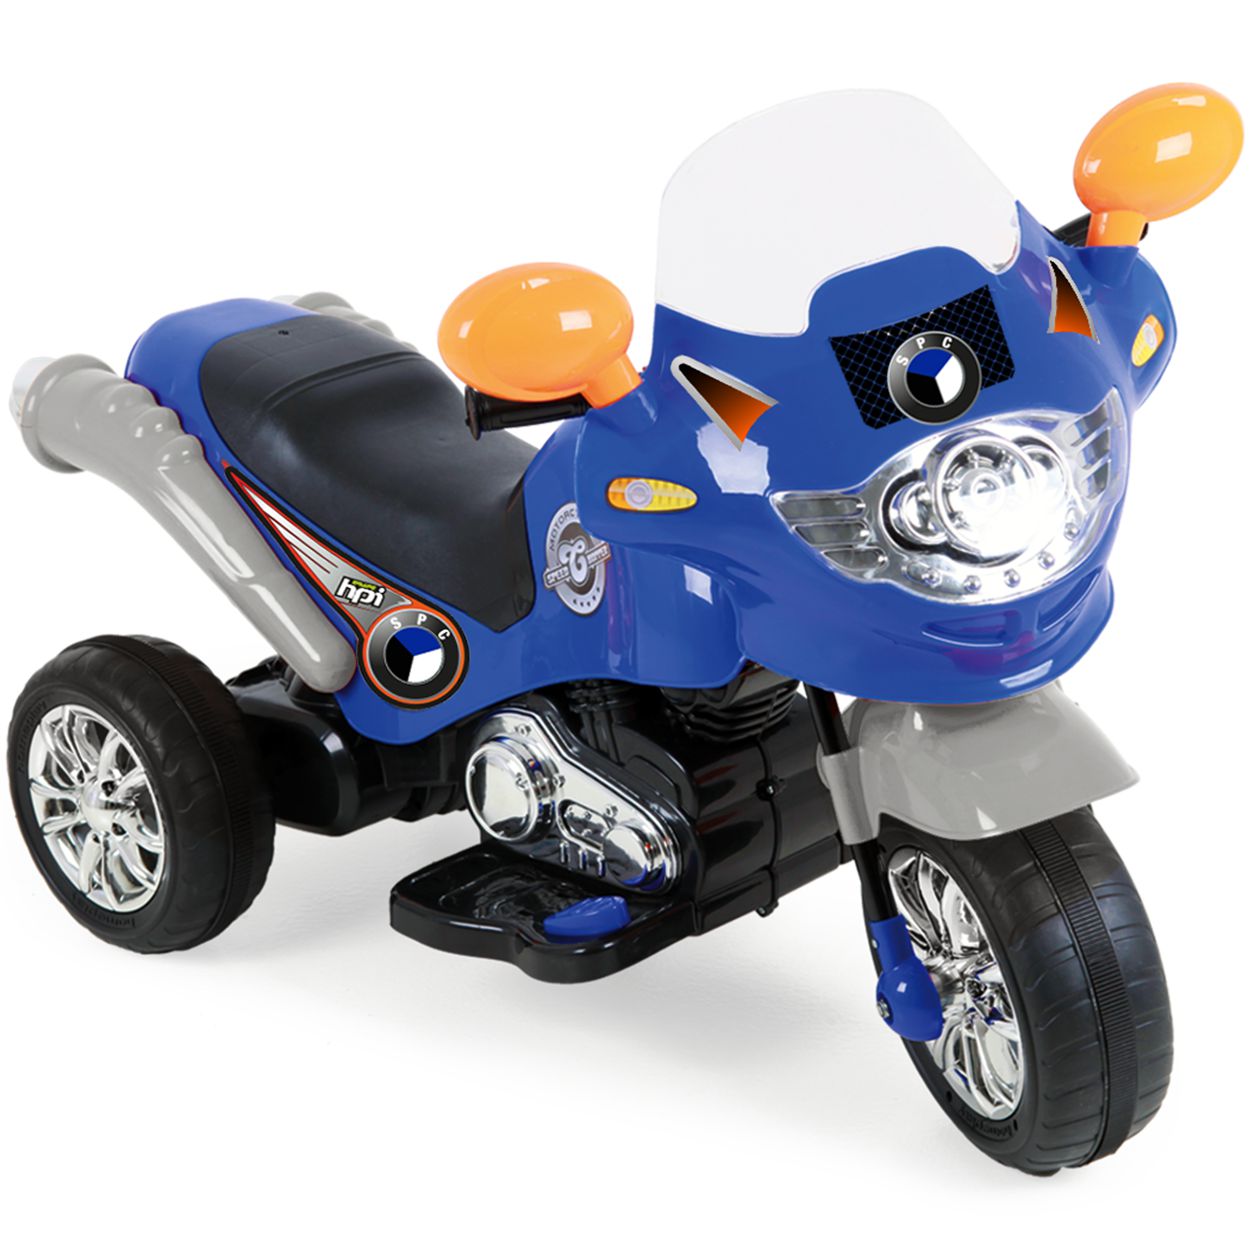 Moto Elétrica Infantil Motocross Vermelha 6v Homeplay